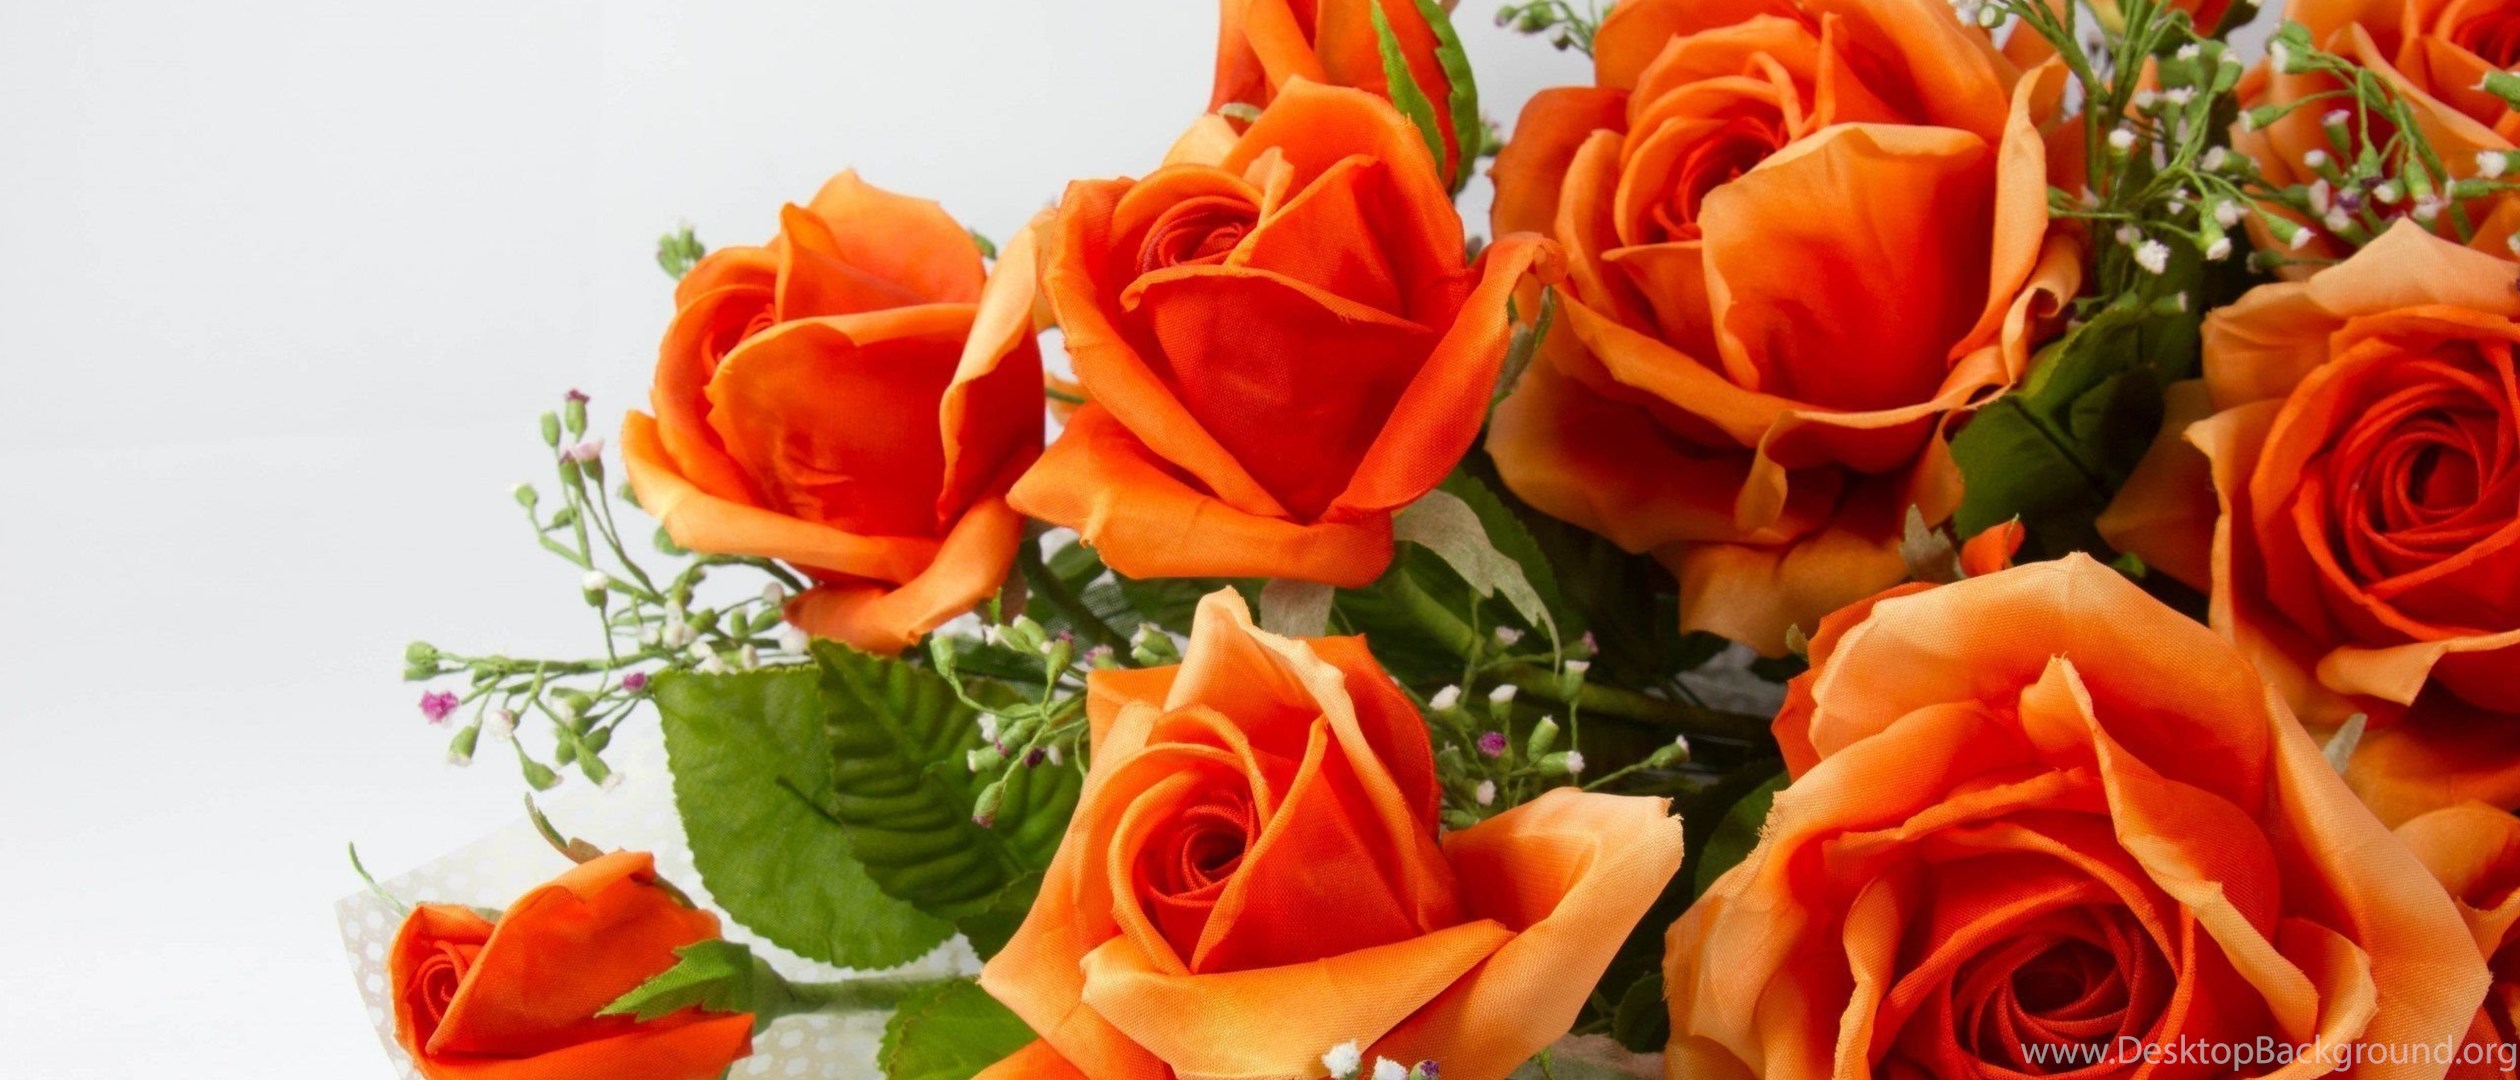 Замечательной даме. Оранжевые розы. Красивые оранжевые розы. Прекрасной женщине цветы. Открытка самой обаятельной и привлекательной.